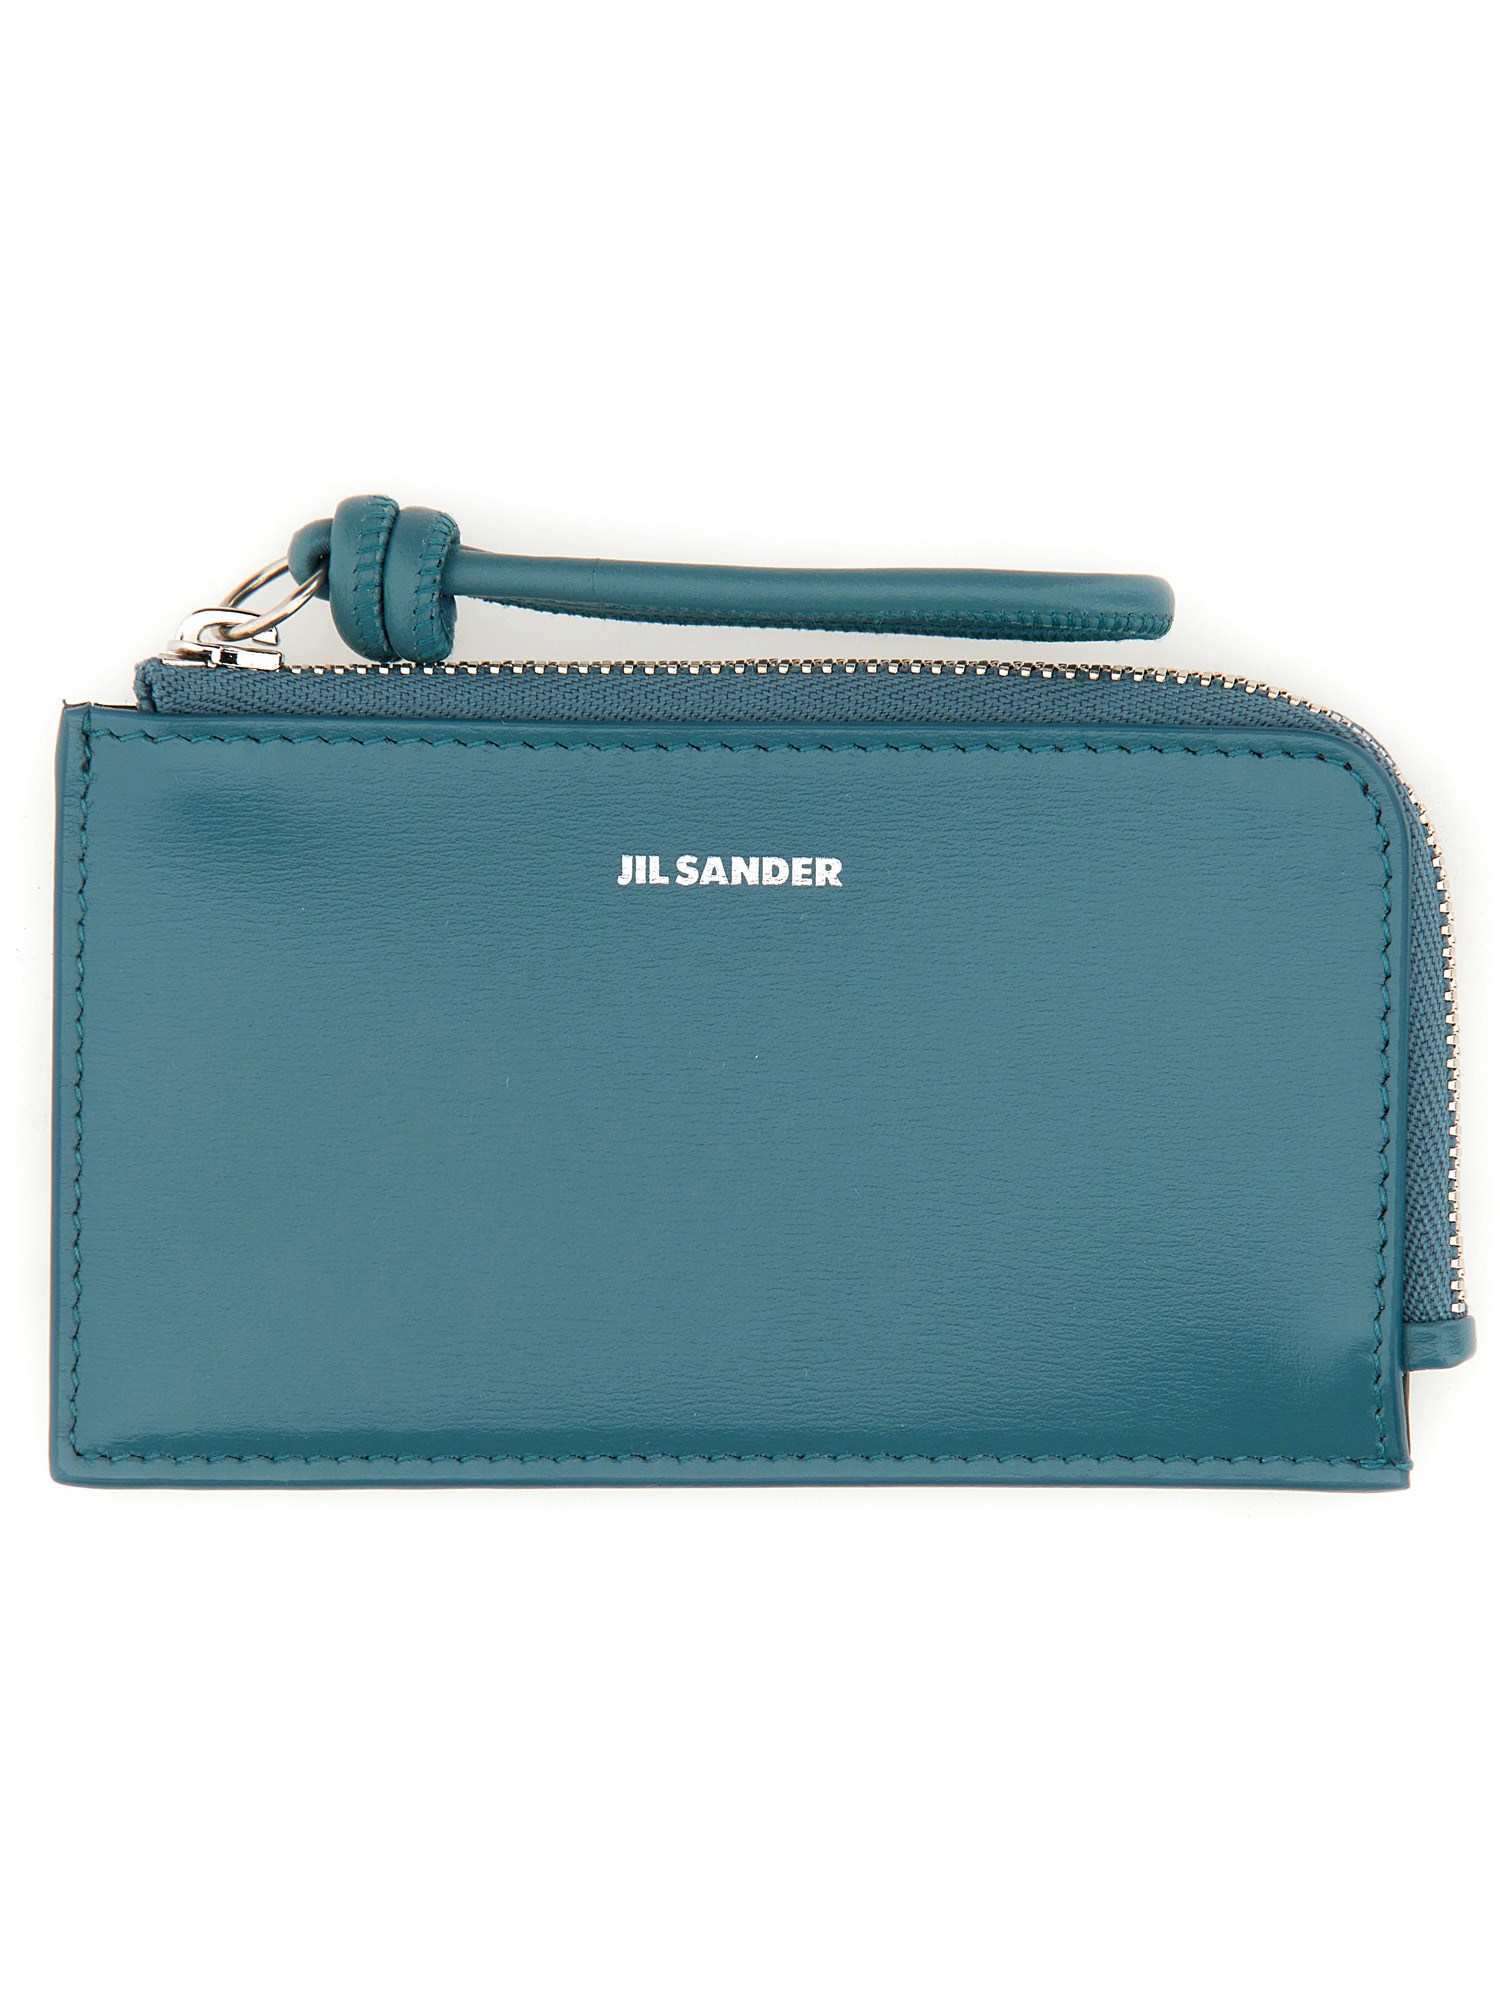 Jil Sander jil sander leather envelope coin purse